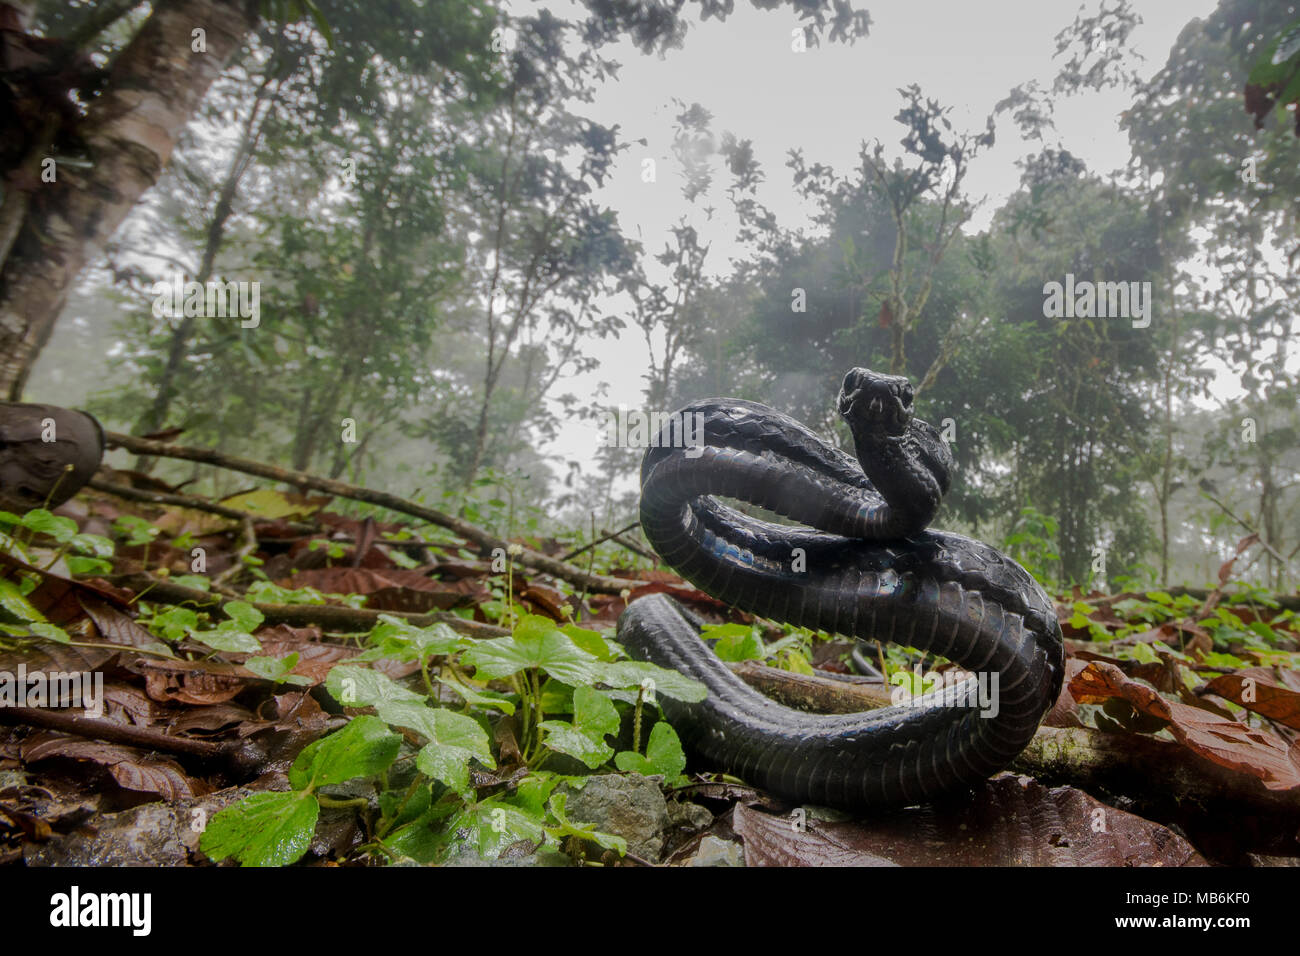 Enojado serpiente Chonta (Chironius grandisquamus) mostrando que está descontento con la atención y actuar agresivamente para asustar al fotógrafo. Foto de stock